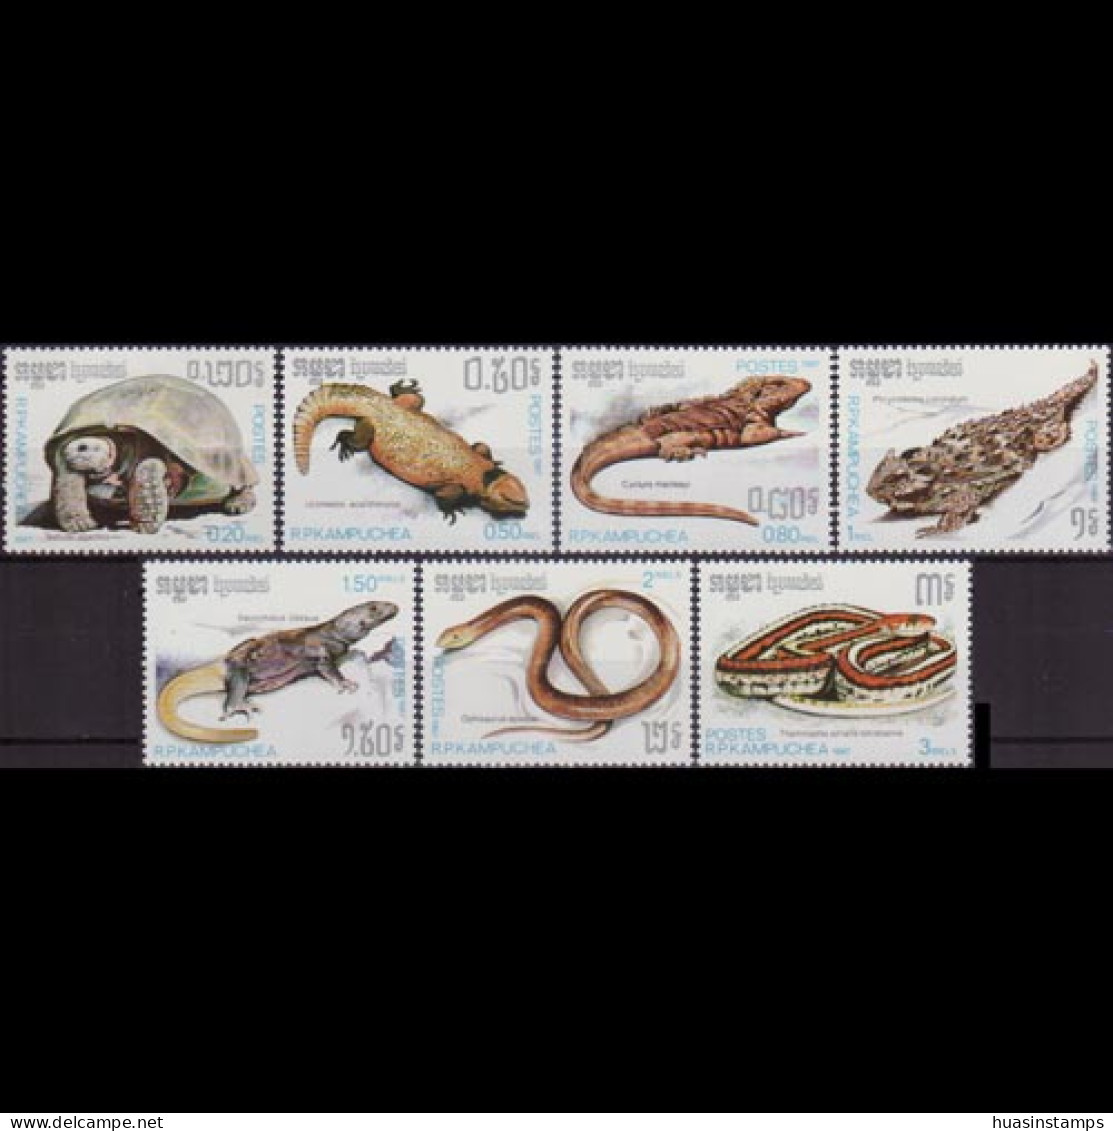 CAMBODIA 1987 - Scott# 805-11 Reptiles Set Of 7 MNH - Kambodscha